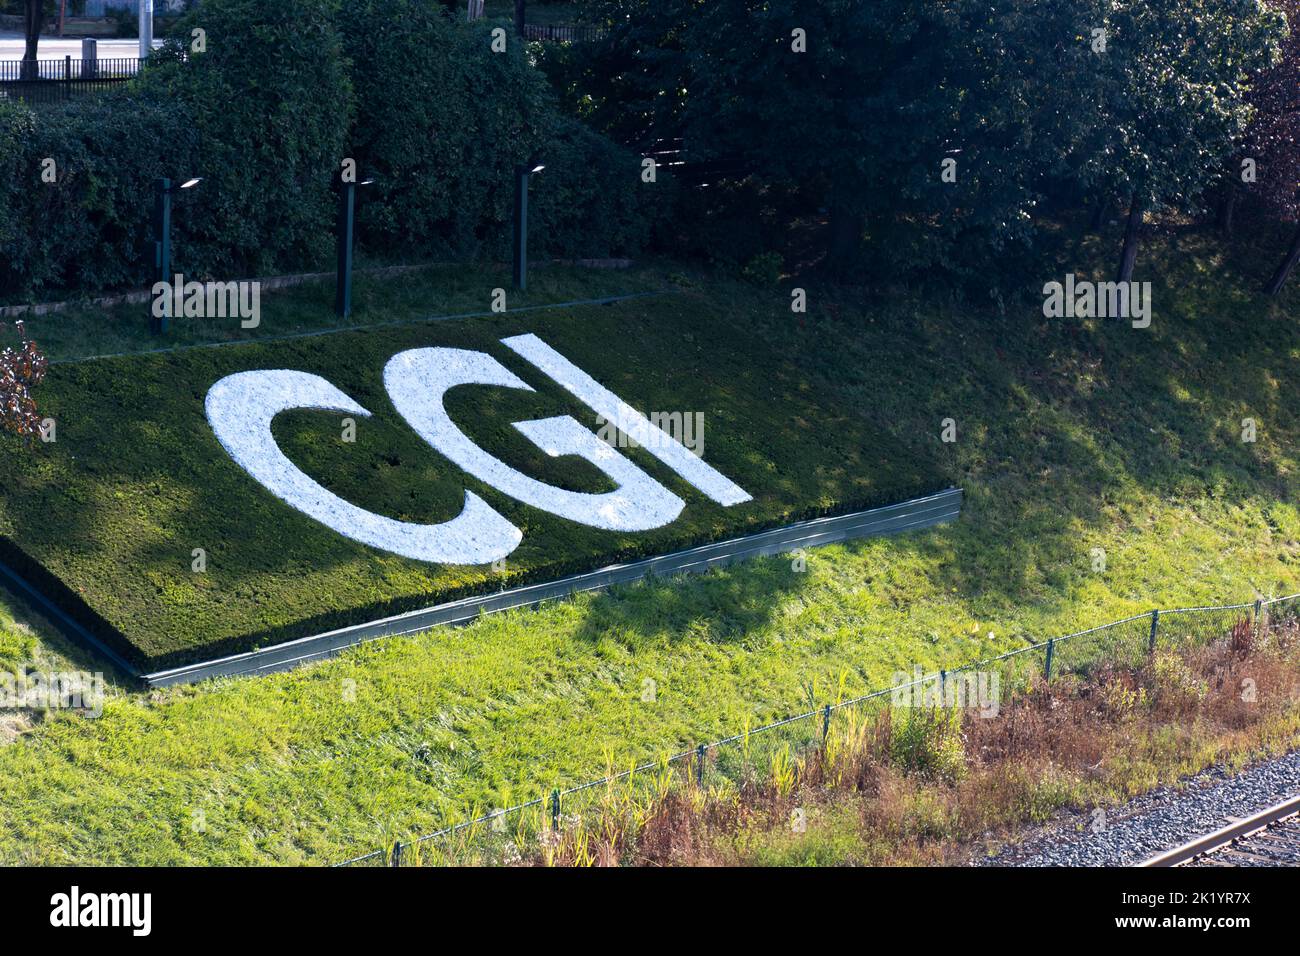 Le logo CGI, CGI Global Inc est visible au centre-ville de Toronto, à côté de la Gardiner Expressway. CGI est une société mondiale de conseil et de technologie EN TI au Canada. société. Banque D'Images